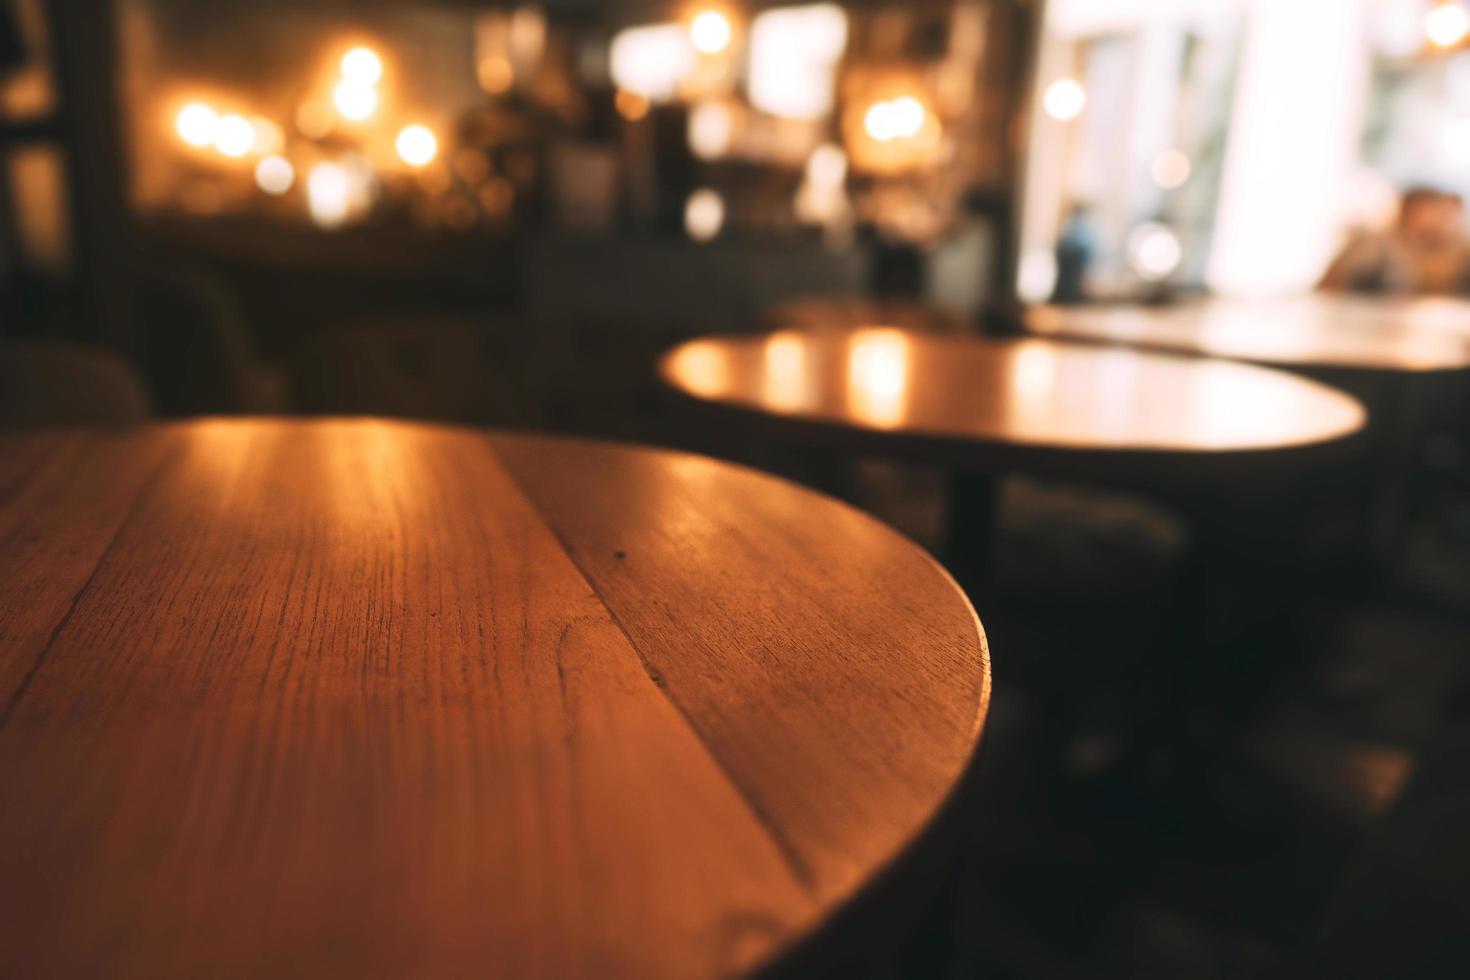 mahoniehouten tafelblad in een warm café in luxe stijl. foto